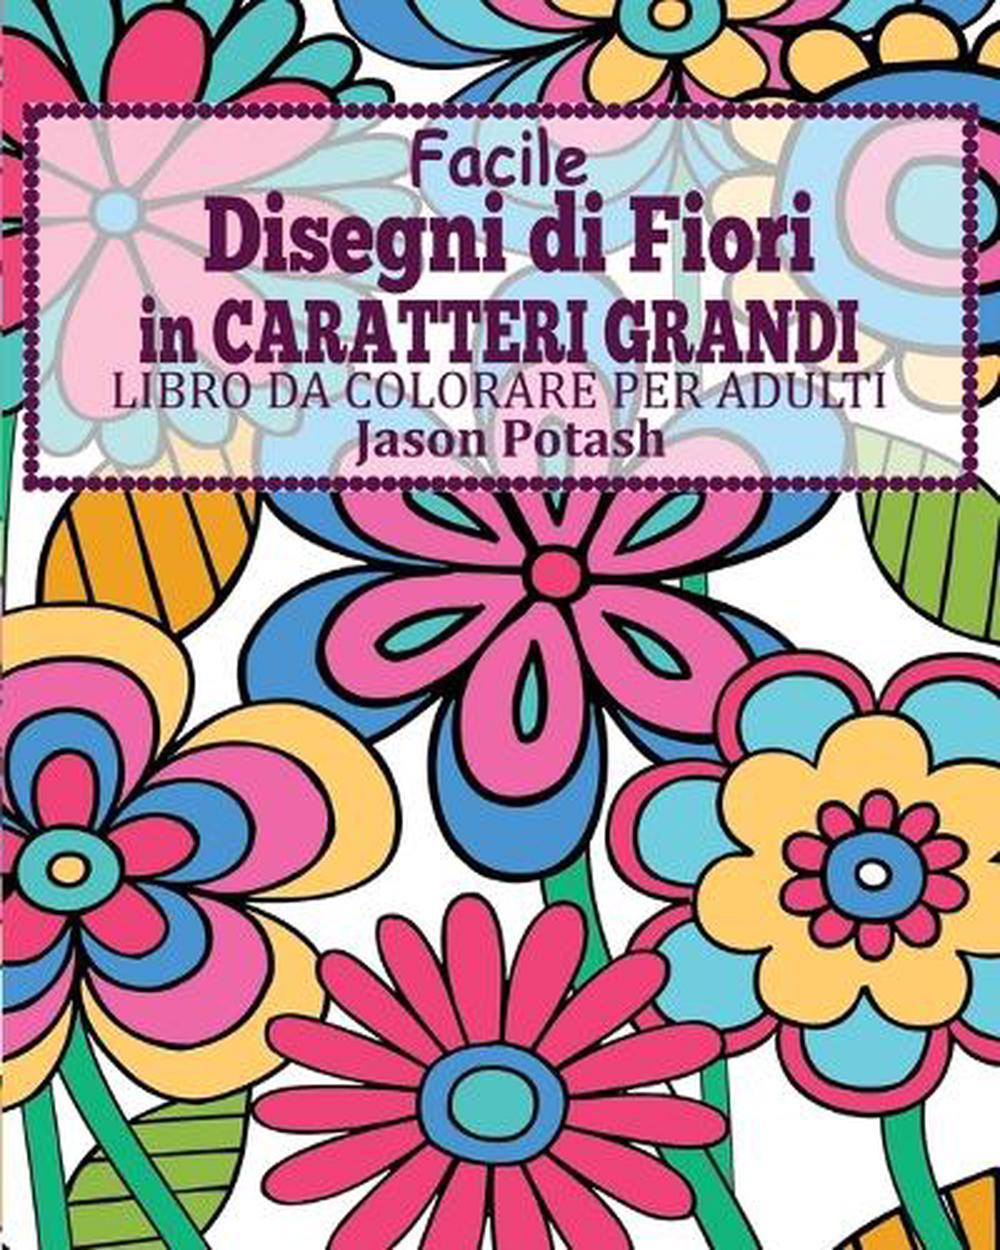 Facile Disegni Di Fiori In Caratteri Grandi Libro Da Colorare Per Adulti By Jaso Ebay